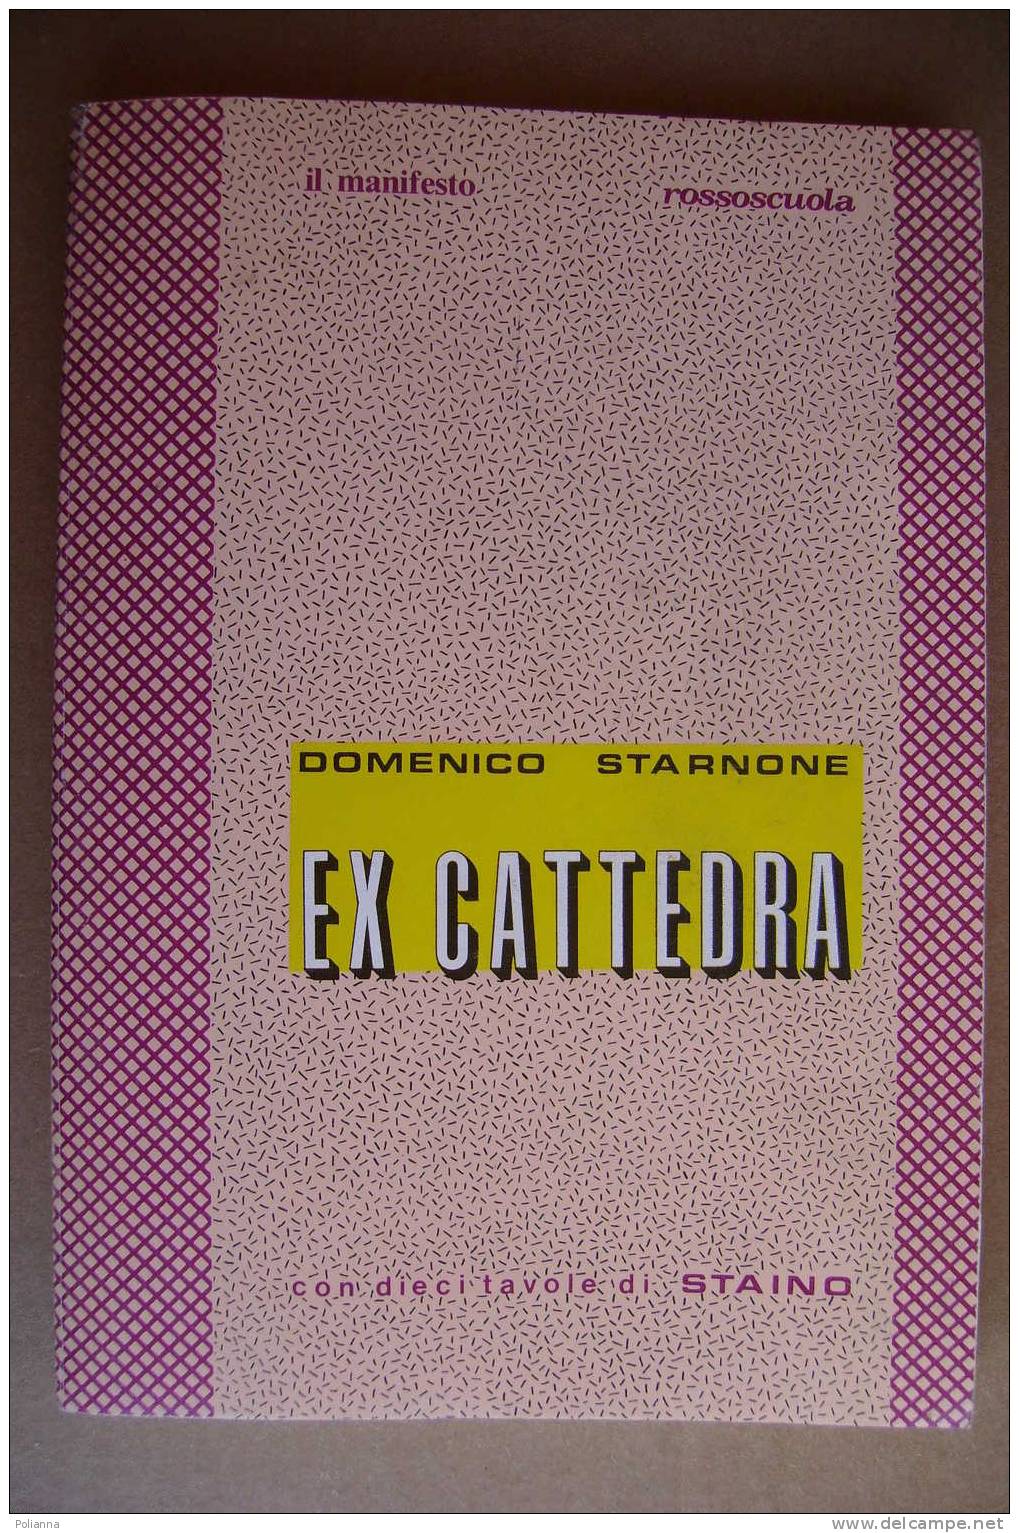 PAO/59 Starnone EX CATTEDRA Il Manifesto - Suppl. A Rossoscuola N.38/10 Tav. STAINO - Gesellschaft, Wirtschaft, Politik